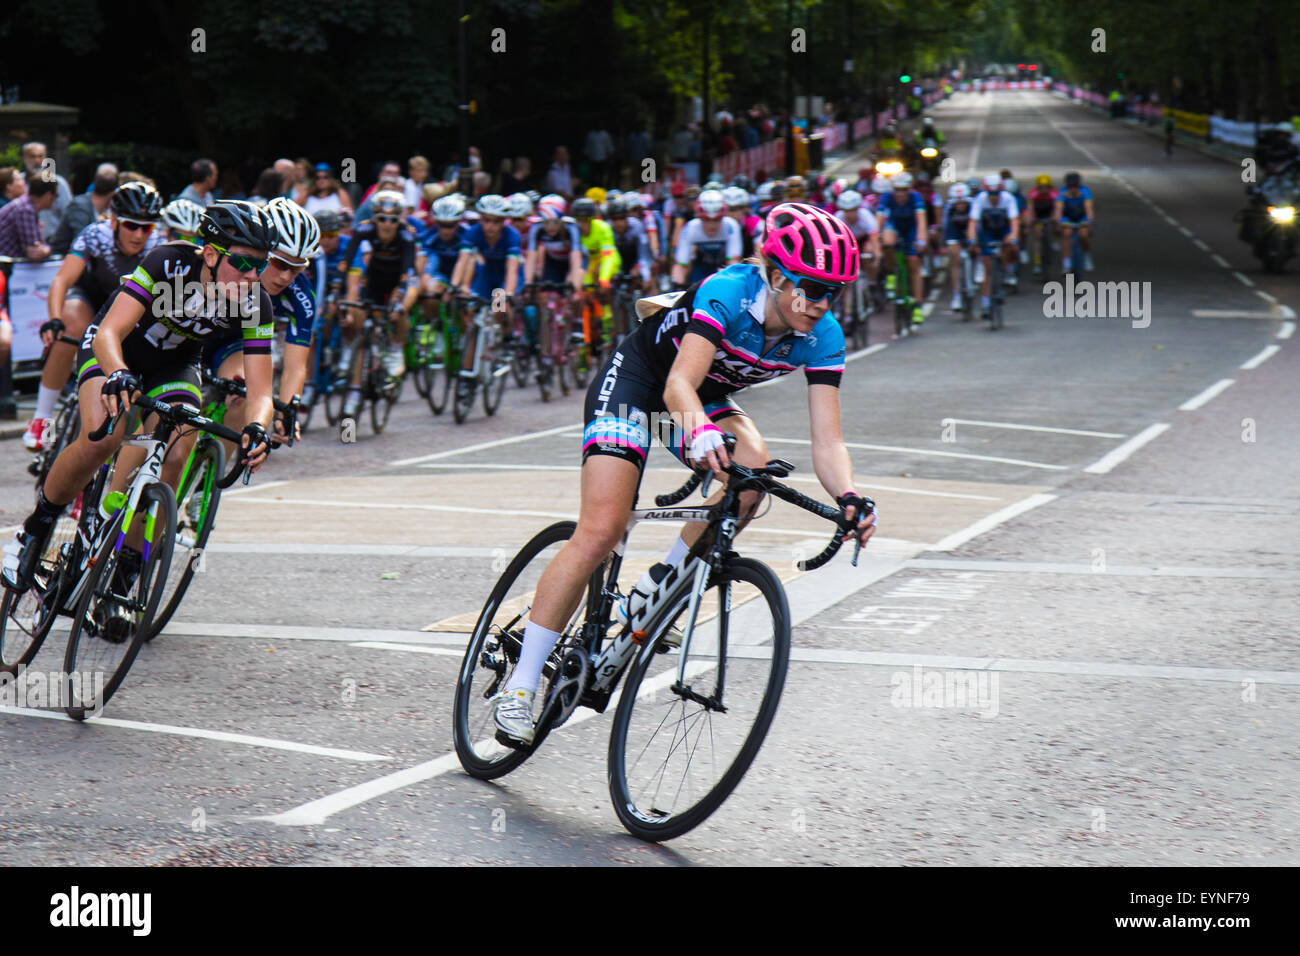 Westminster, Londres, 1er août 2015. Top femmes cyclistes concurrence dans le Prudential Ride Grand Prix de Londres autour de St James's Park. Banque D'Images